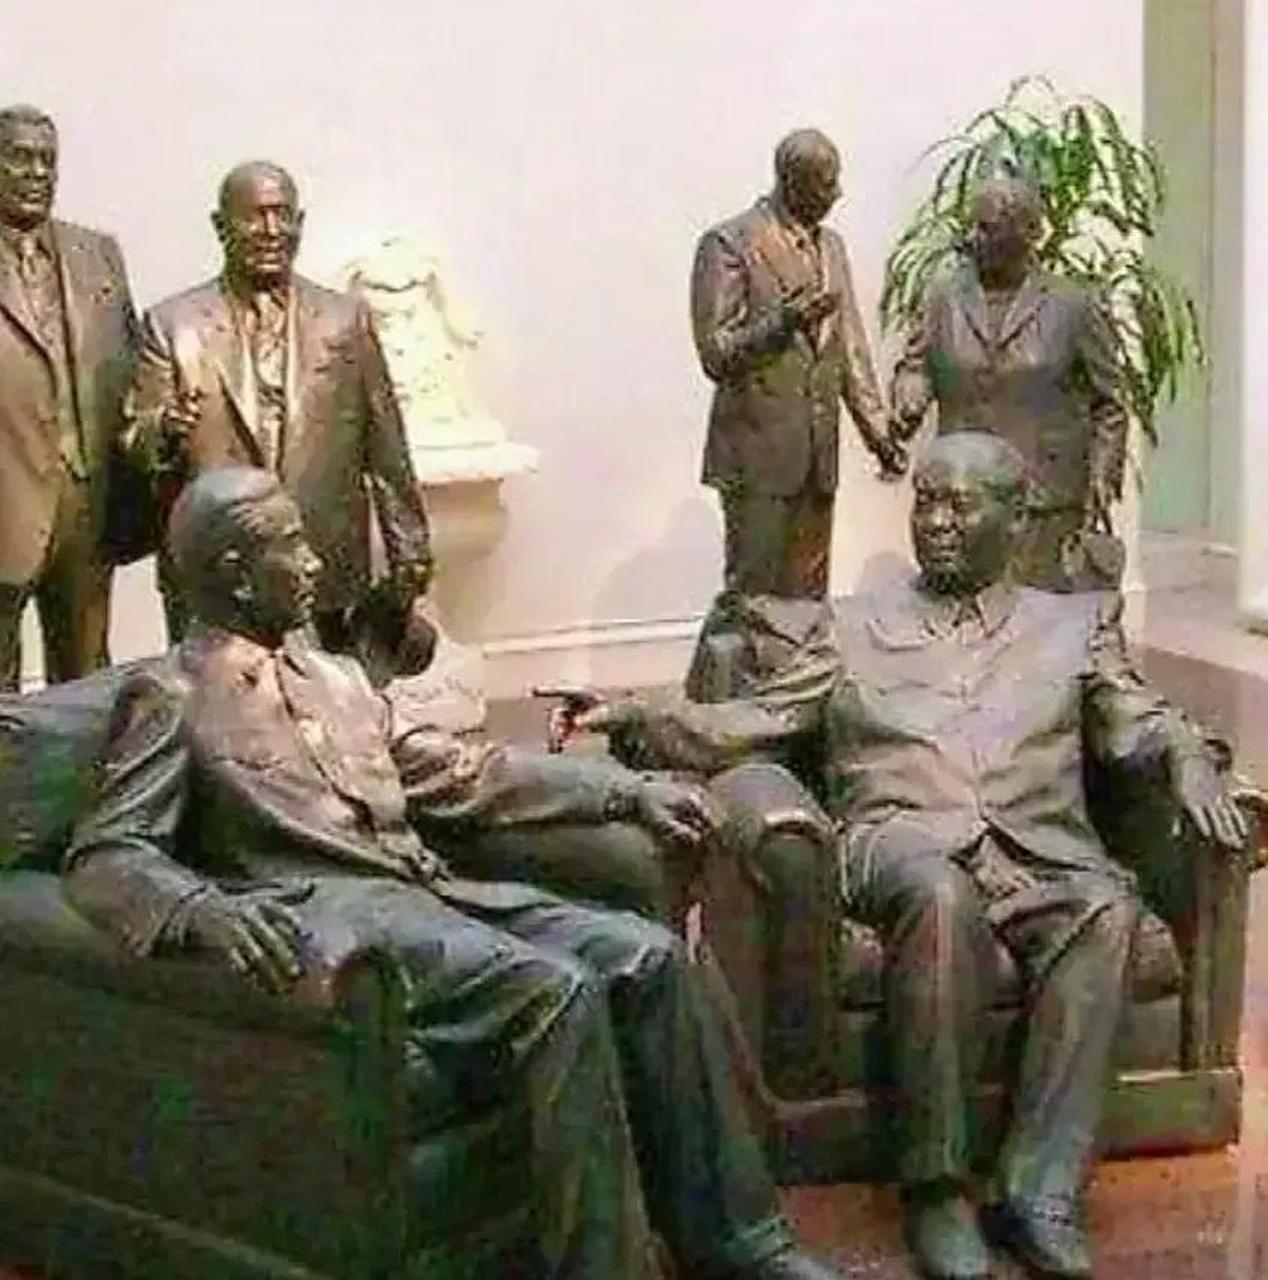 领动计划 在美国尼克松博物馆中,有10尊铜像,他们都是20世纪影响